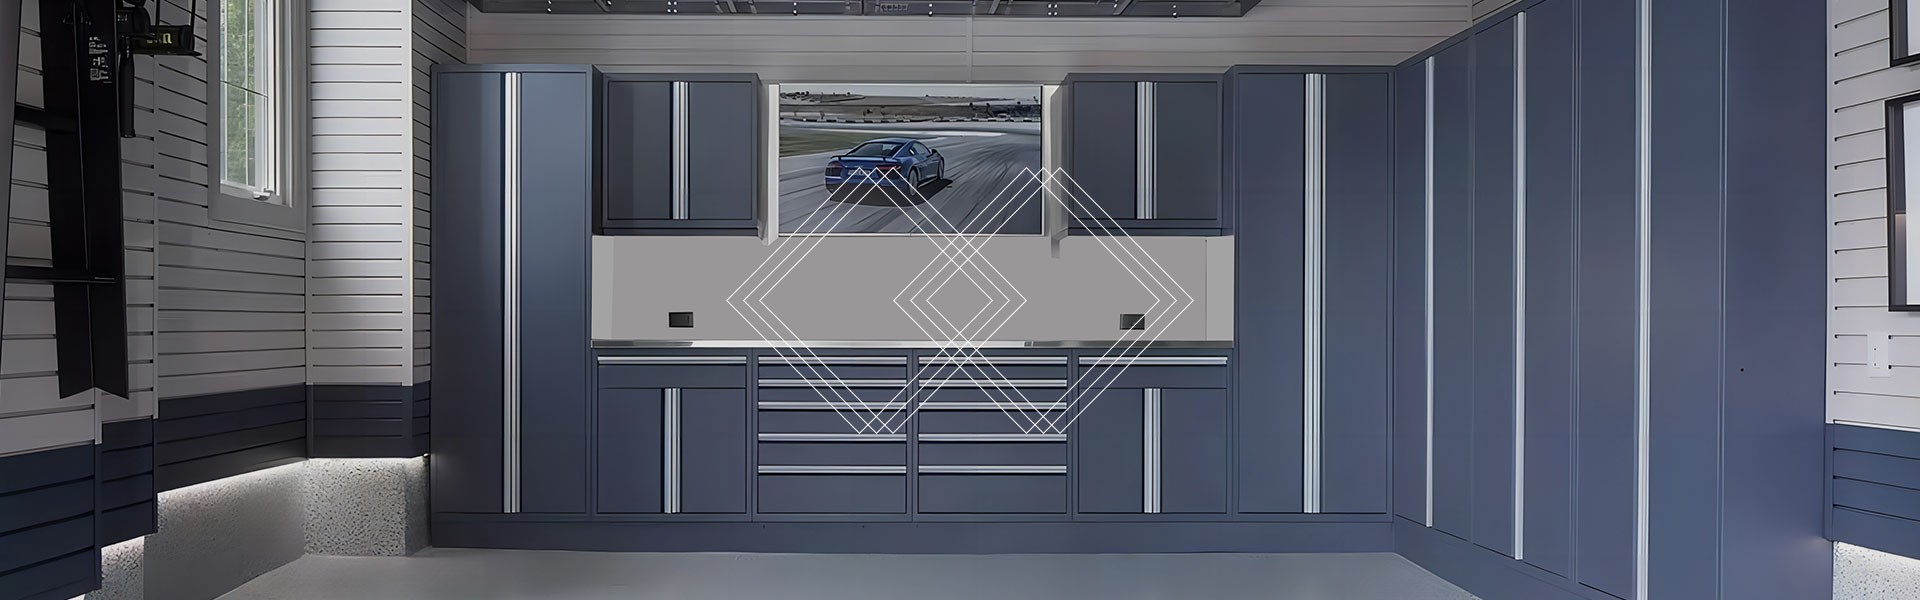 garage-cabinet